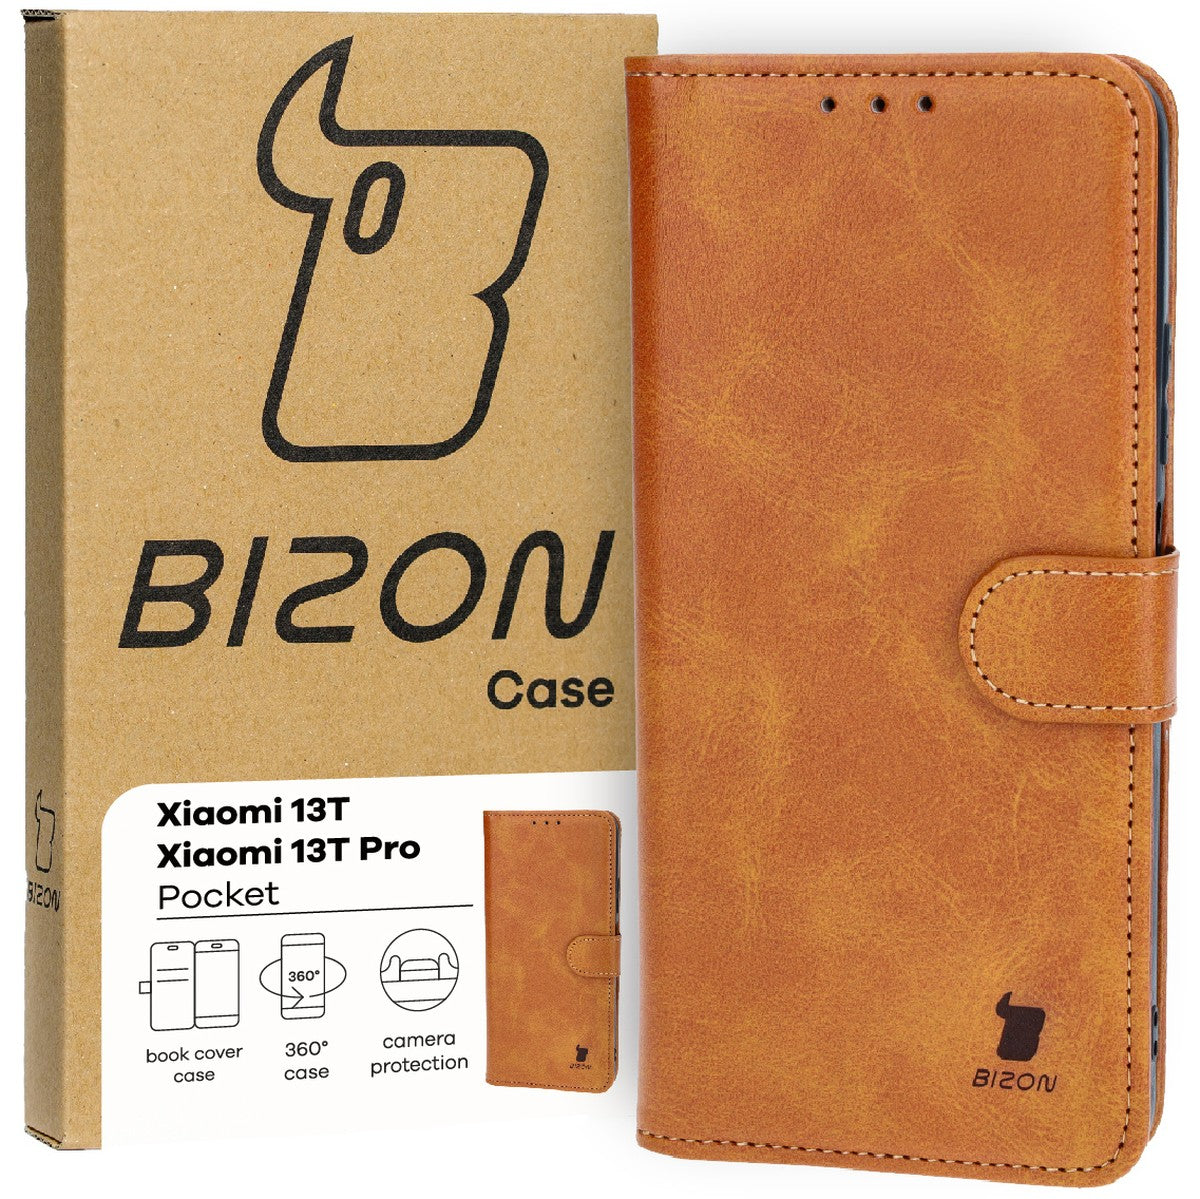 Schutzhülle für Xiaomi 13T / 13T Pro, Bizon Case Pocket, Braun